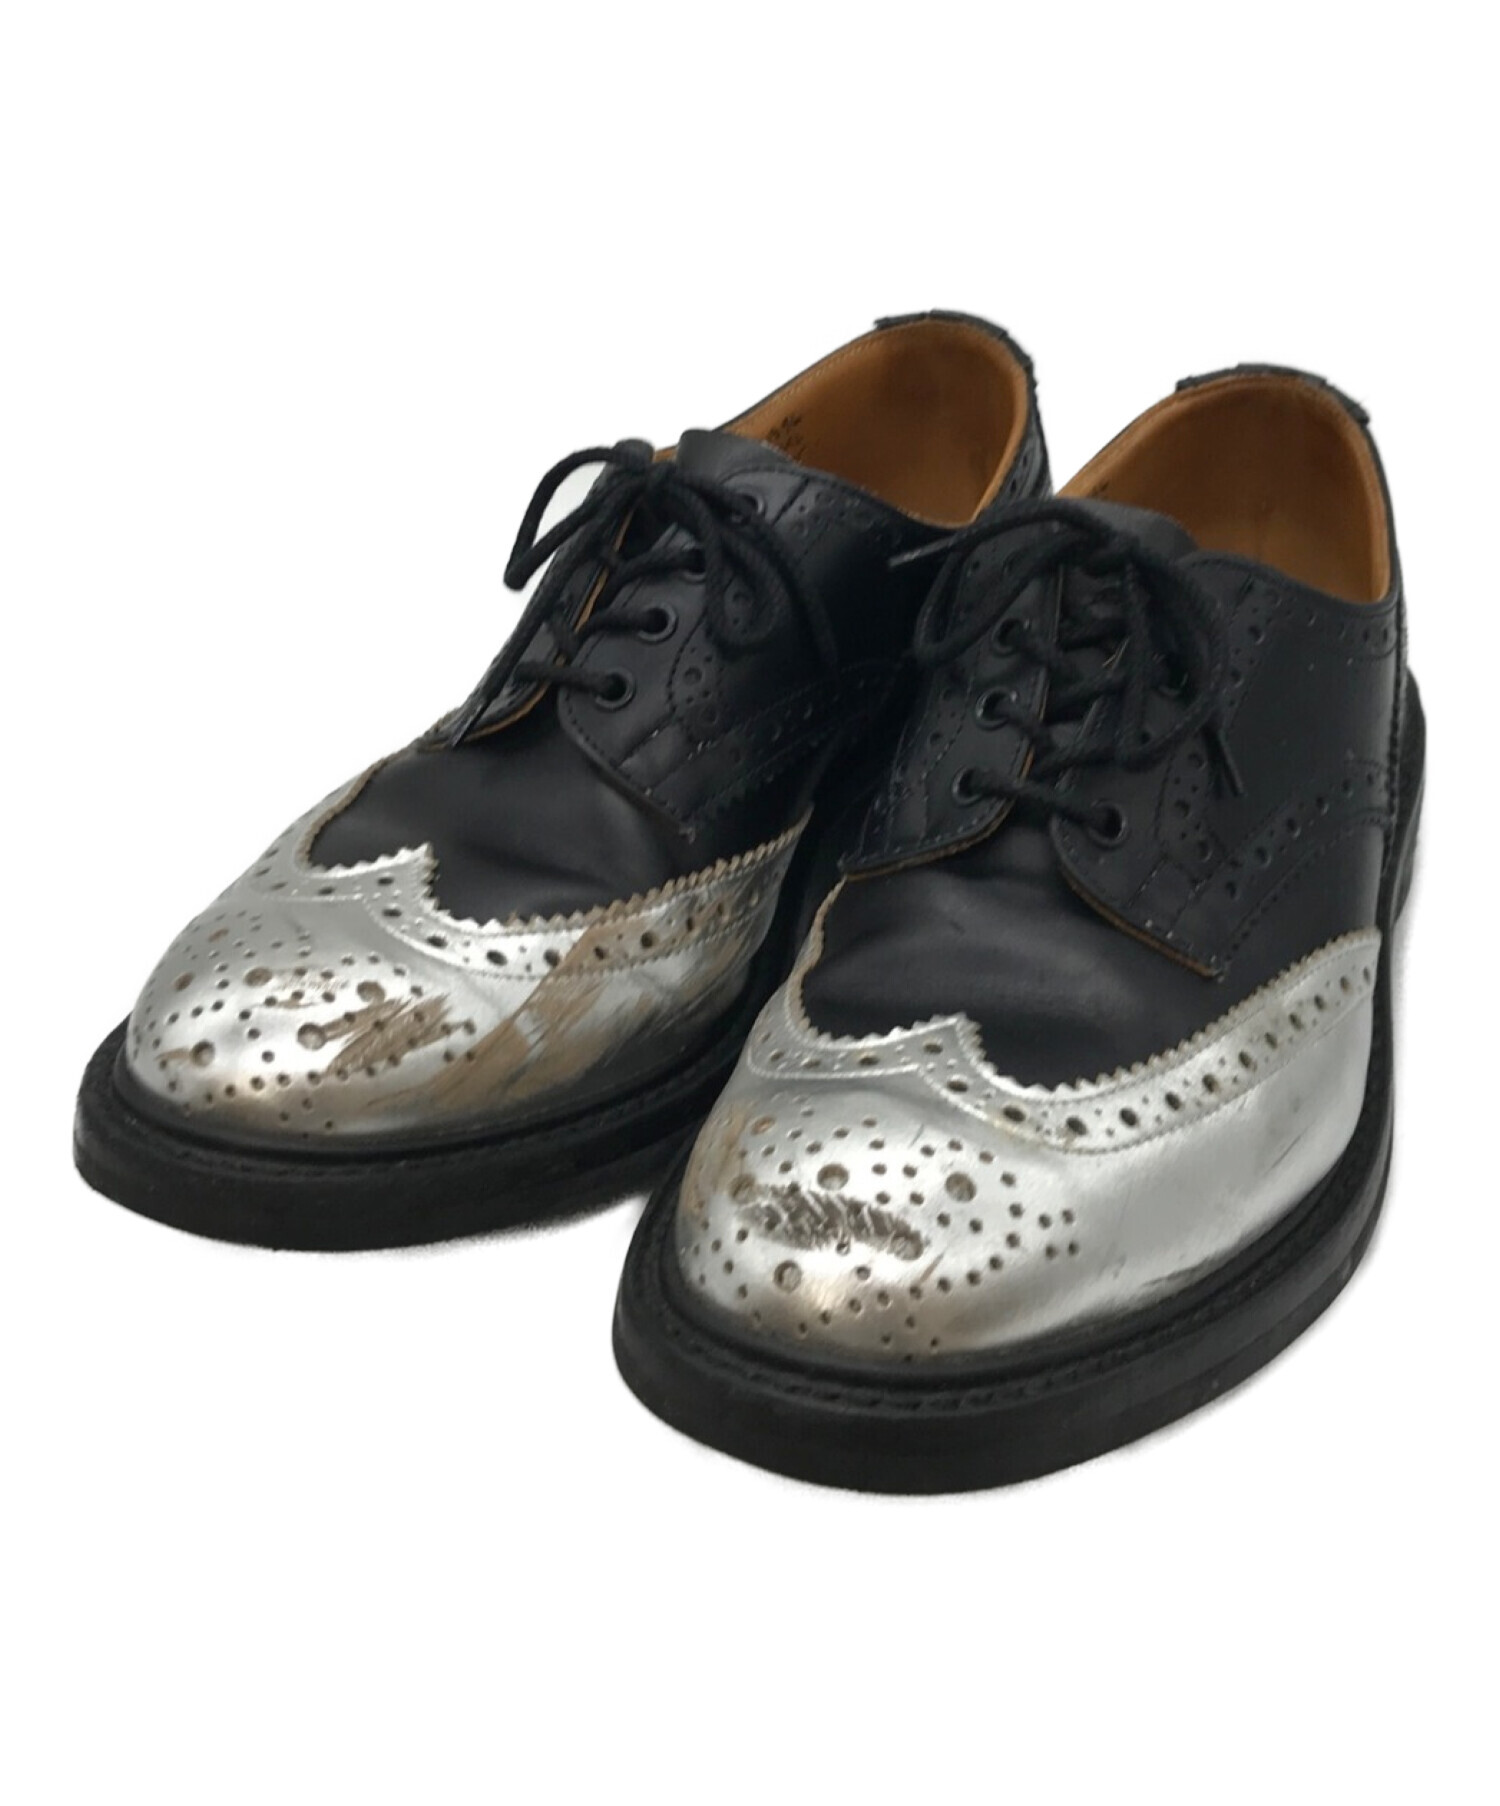 新着 Tricker's × ウイングチップ コラボ革靴 sophnet 靴 - www.zemco.pk